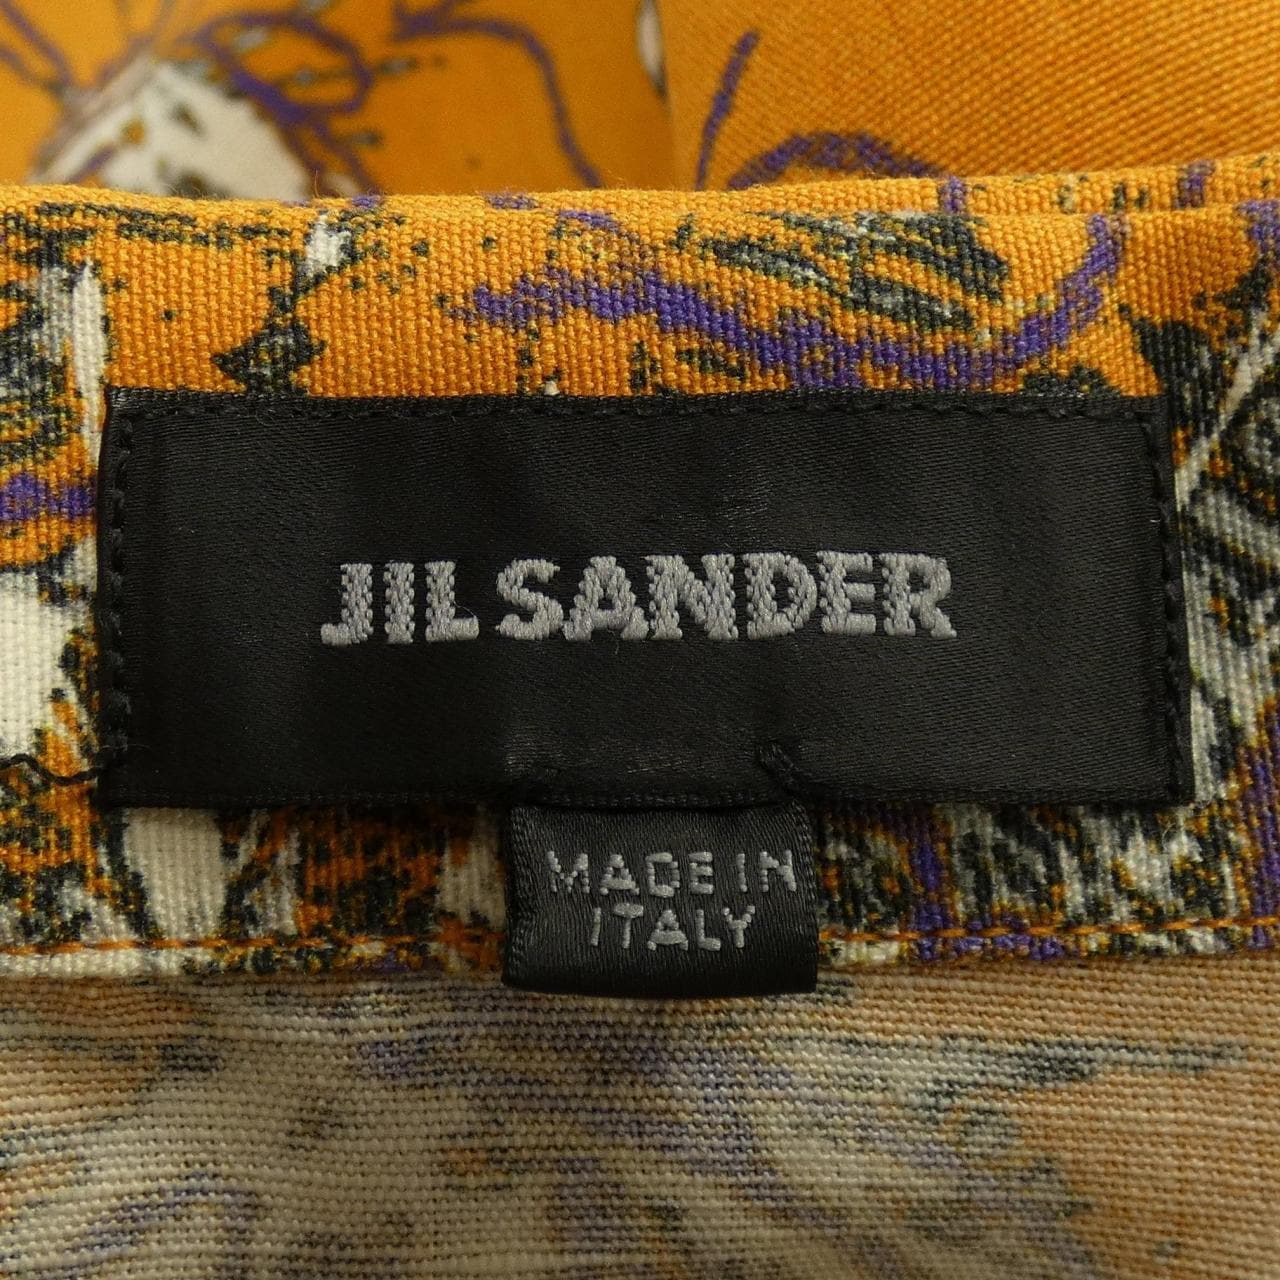 JIL SANDER Jil Sander S/S shirt